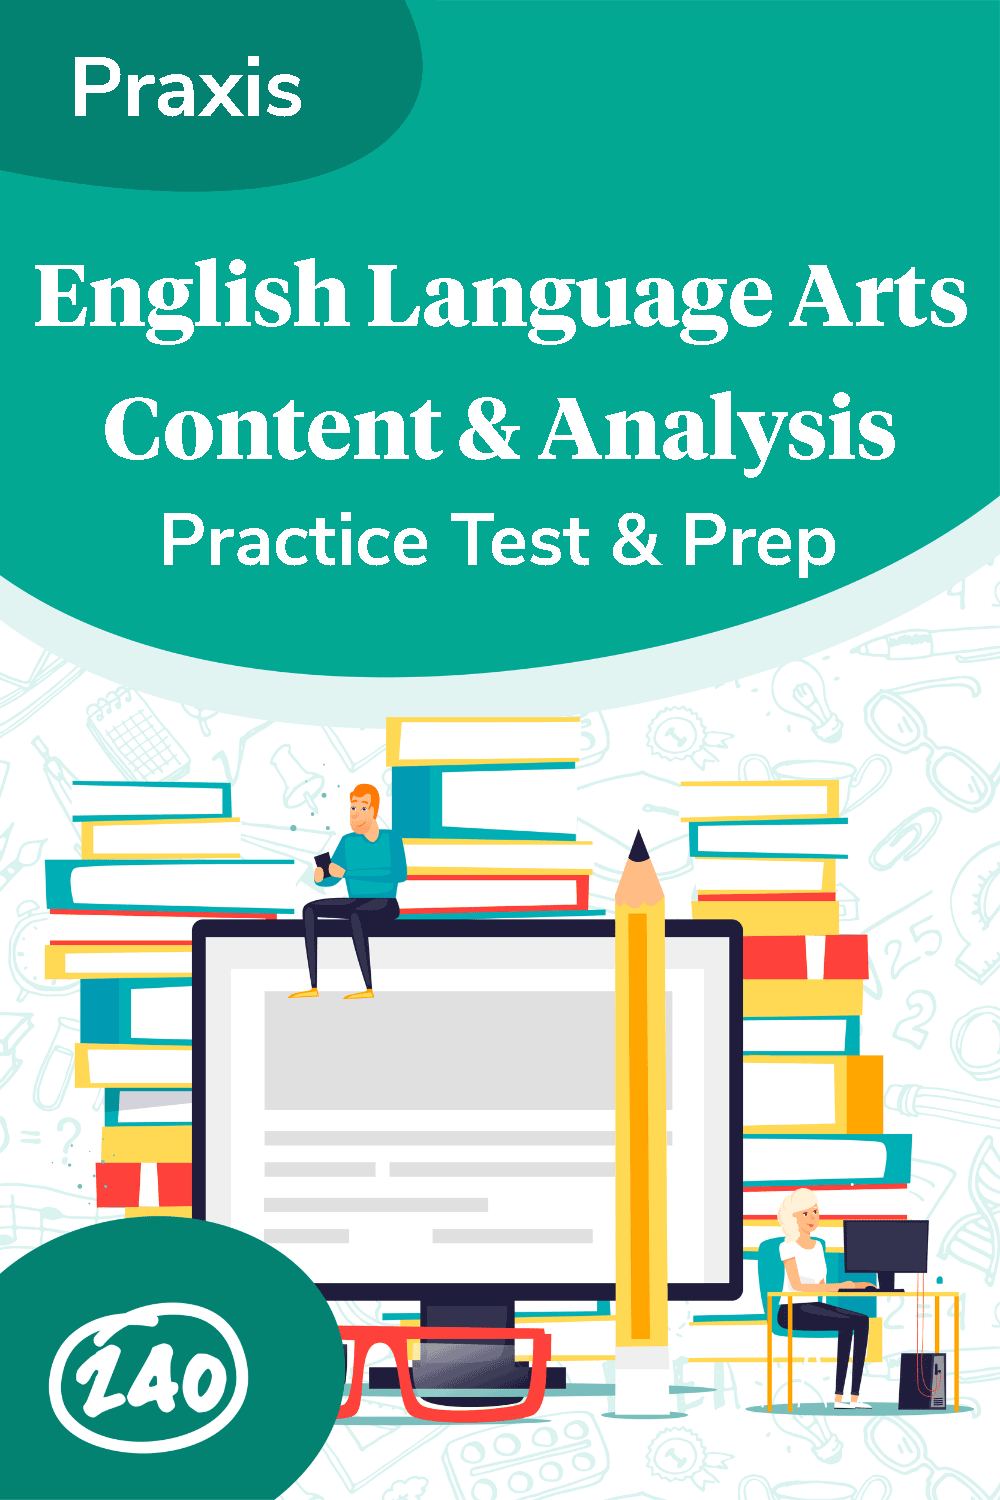 Praxis English Language Arts Content & Analysis